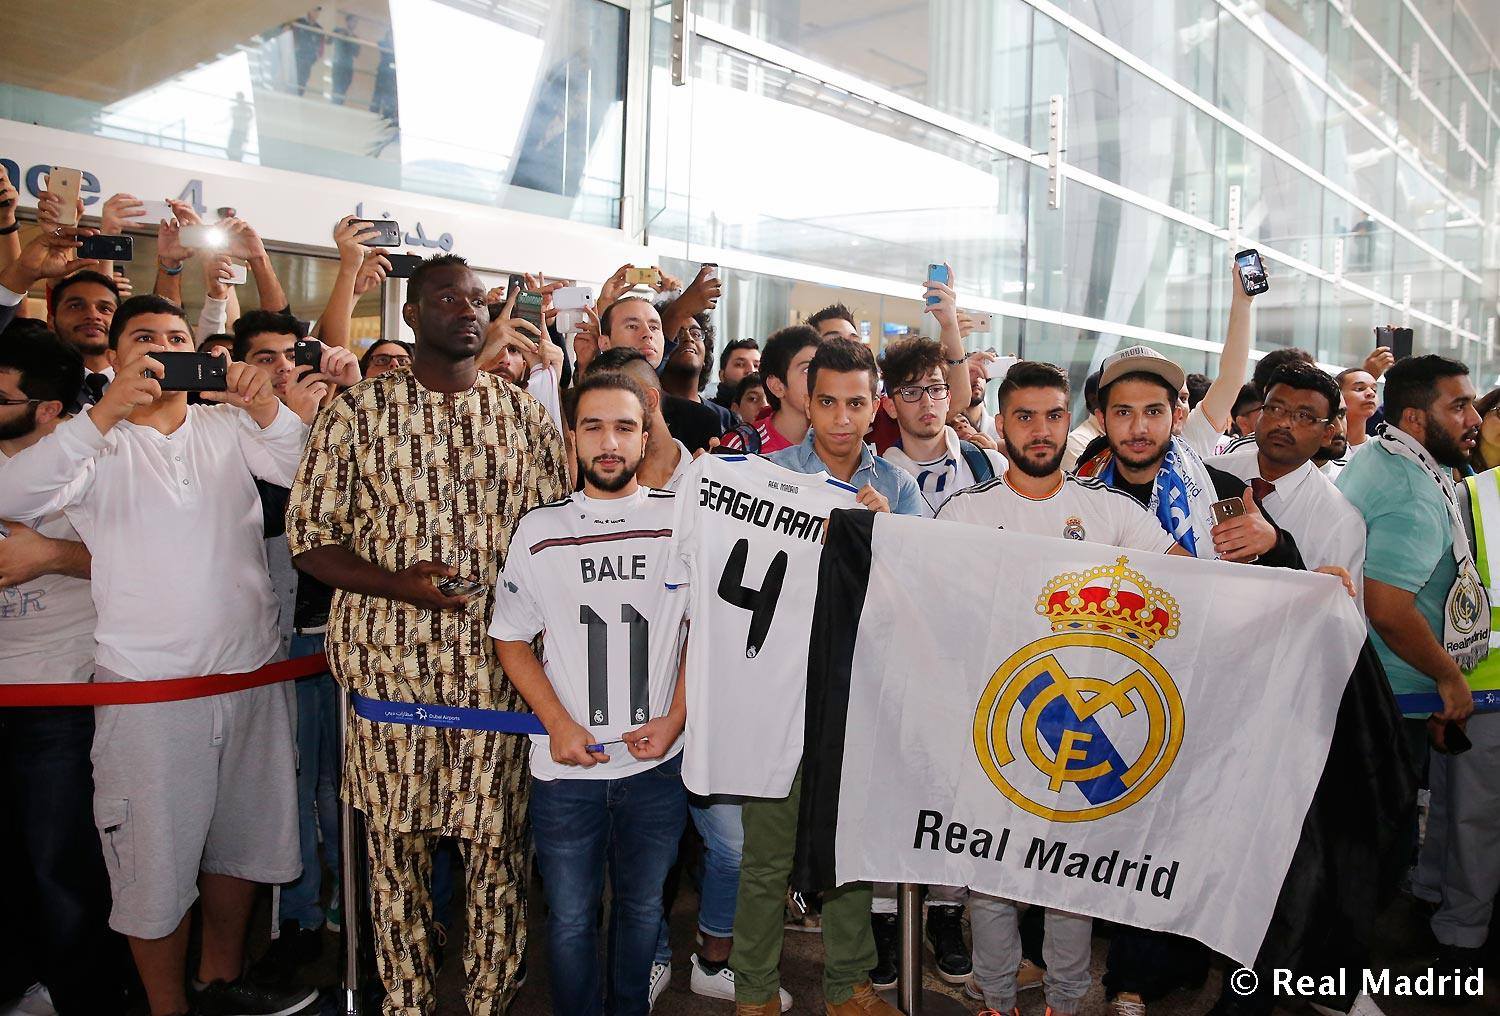 صور استقبال لاعبي نادي ريال مدريد الى دبي 2015